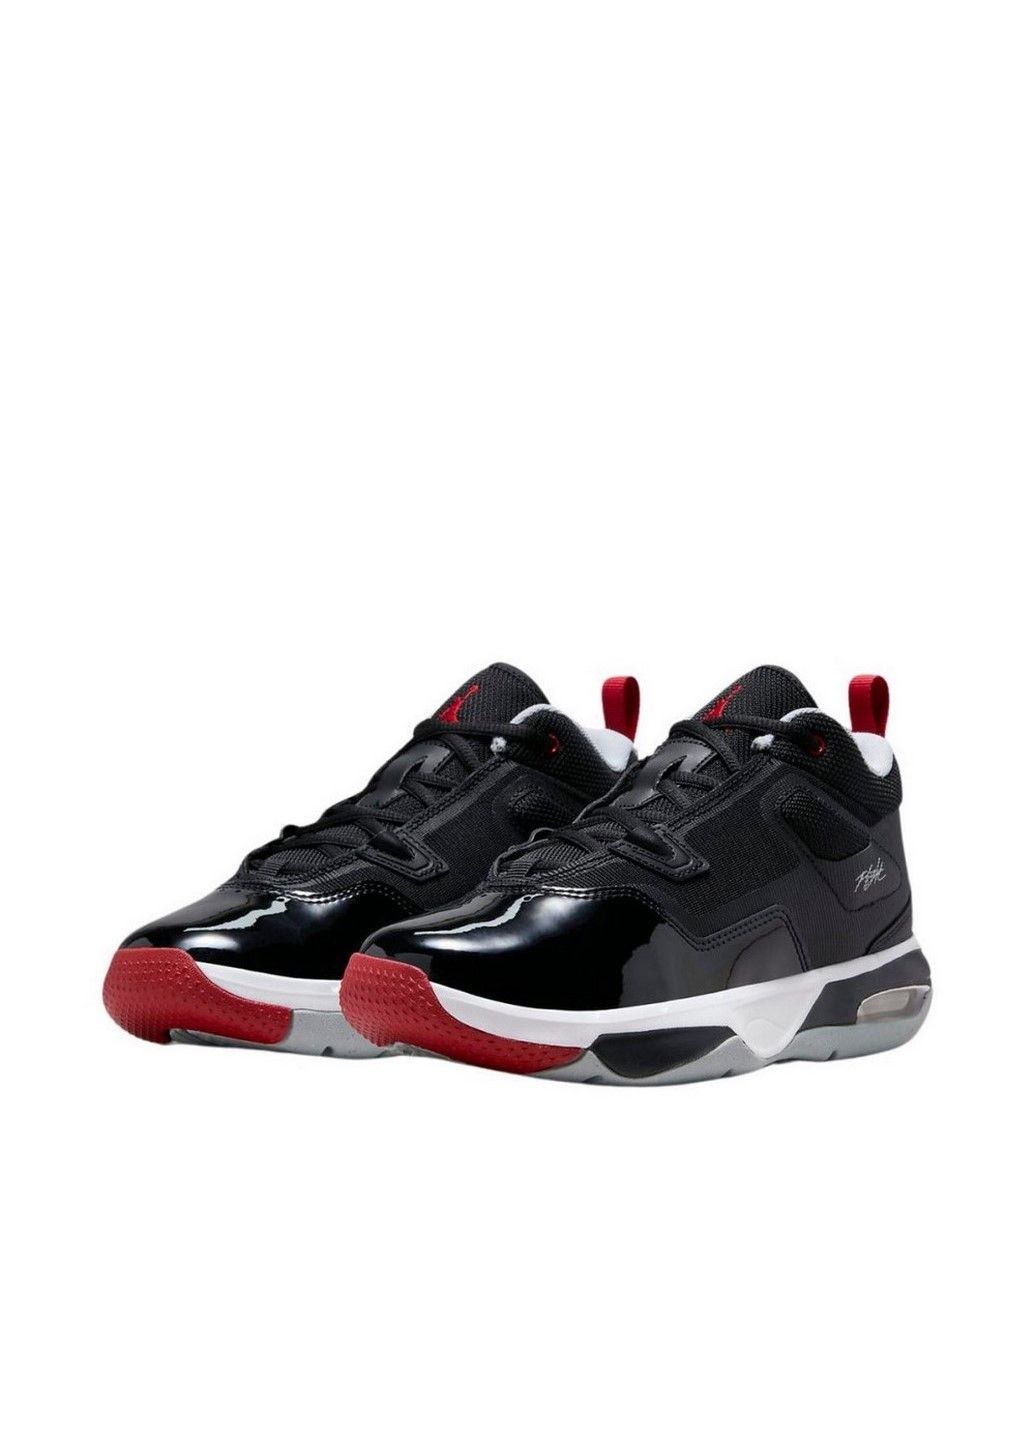 Черные демисезонные кроссовки stay loyal 3 (gs) fb9922-006 Jordan